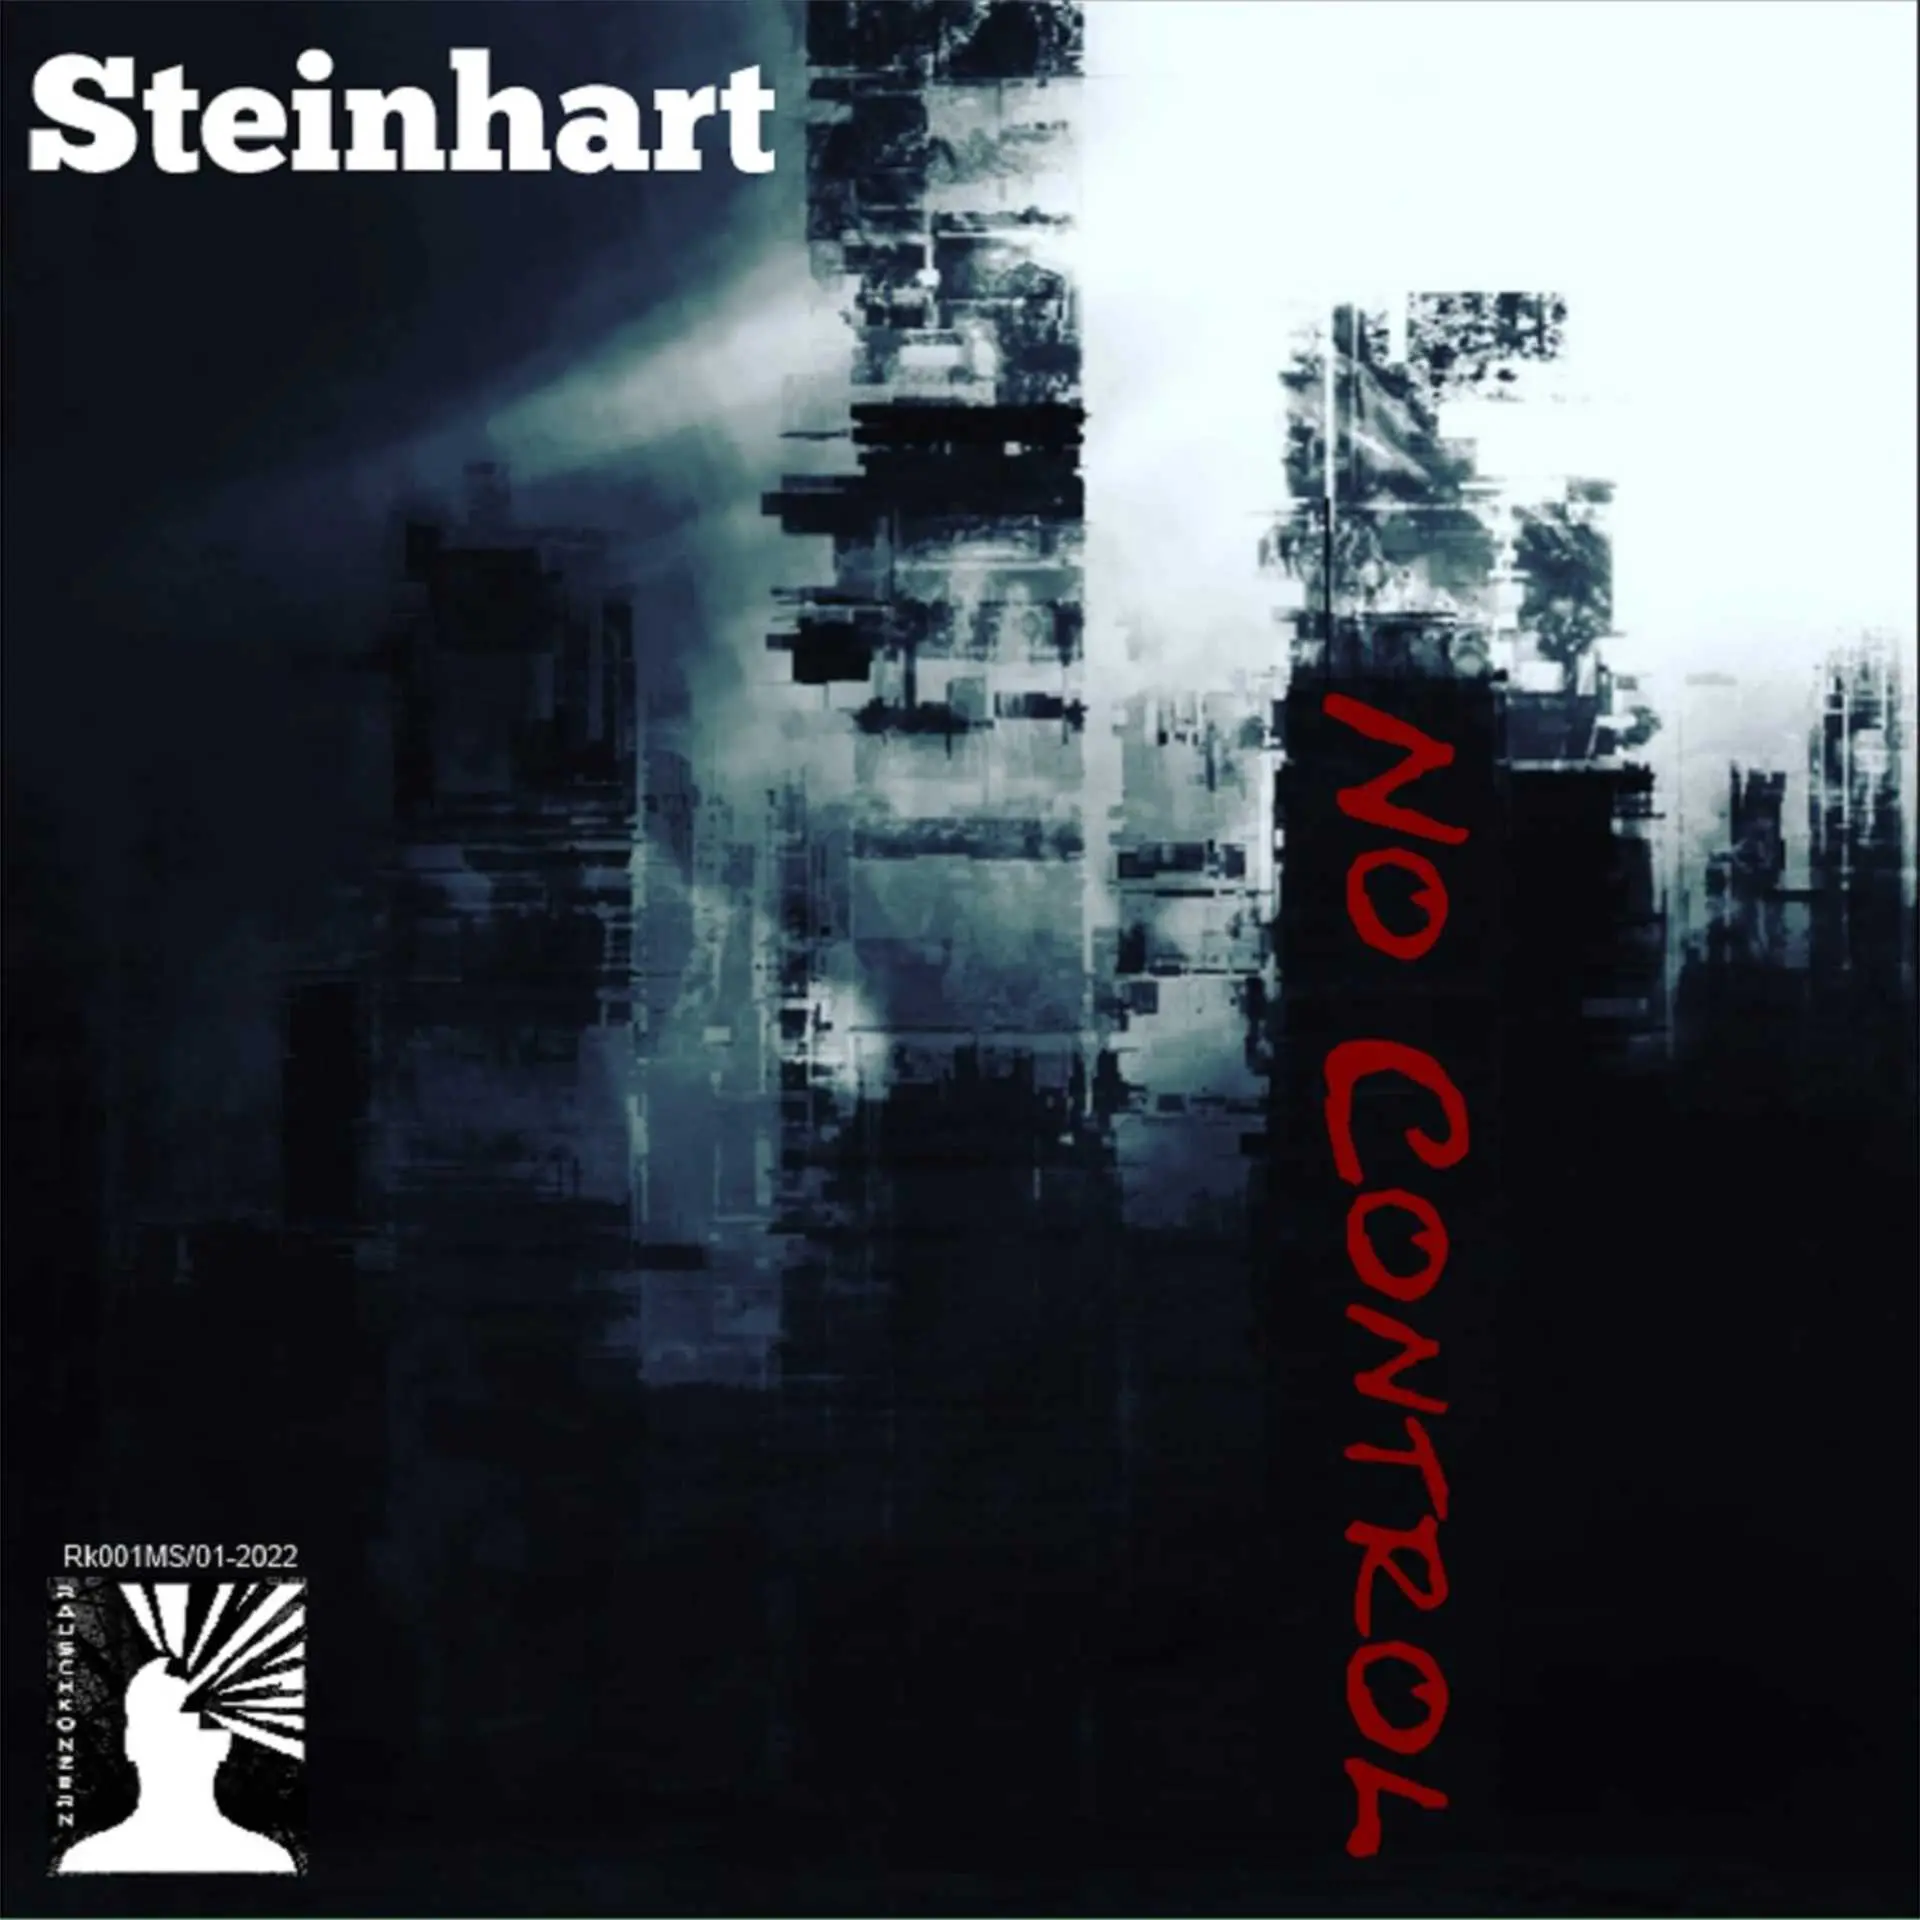 steinhart no control